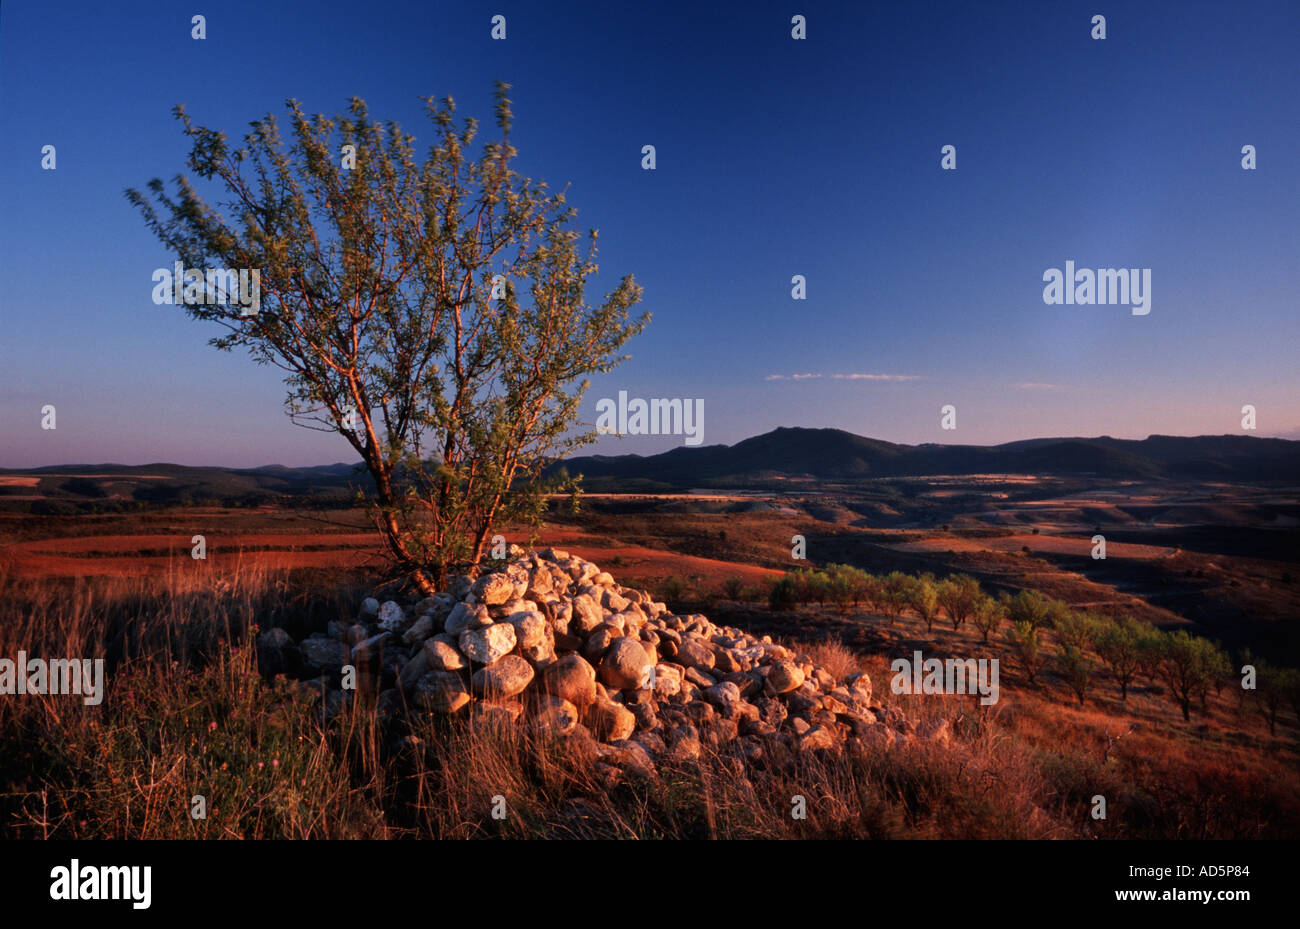 Árbol con piedras apiladas en la base durante la puesta de sol en la Sierra de Albarracín, Aragón, España Foto de stock